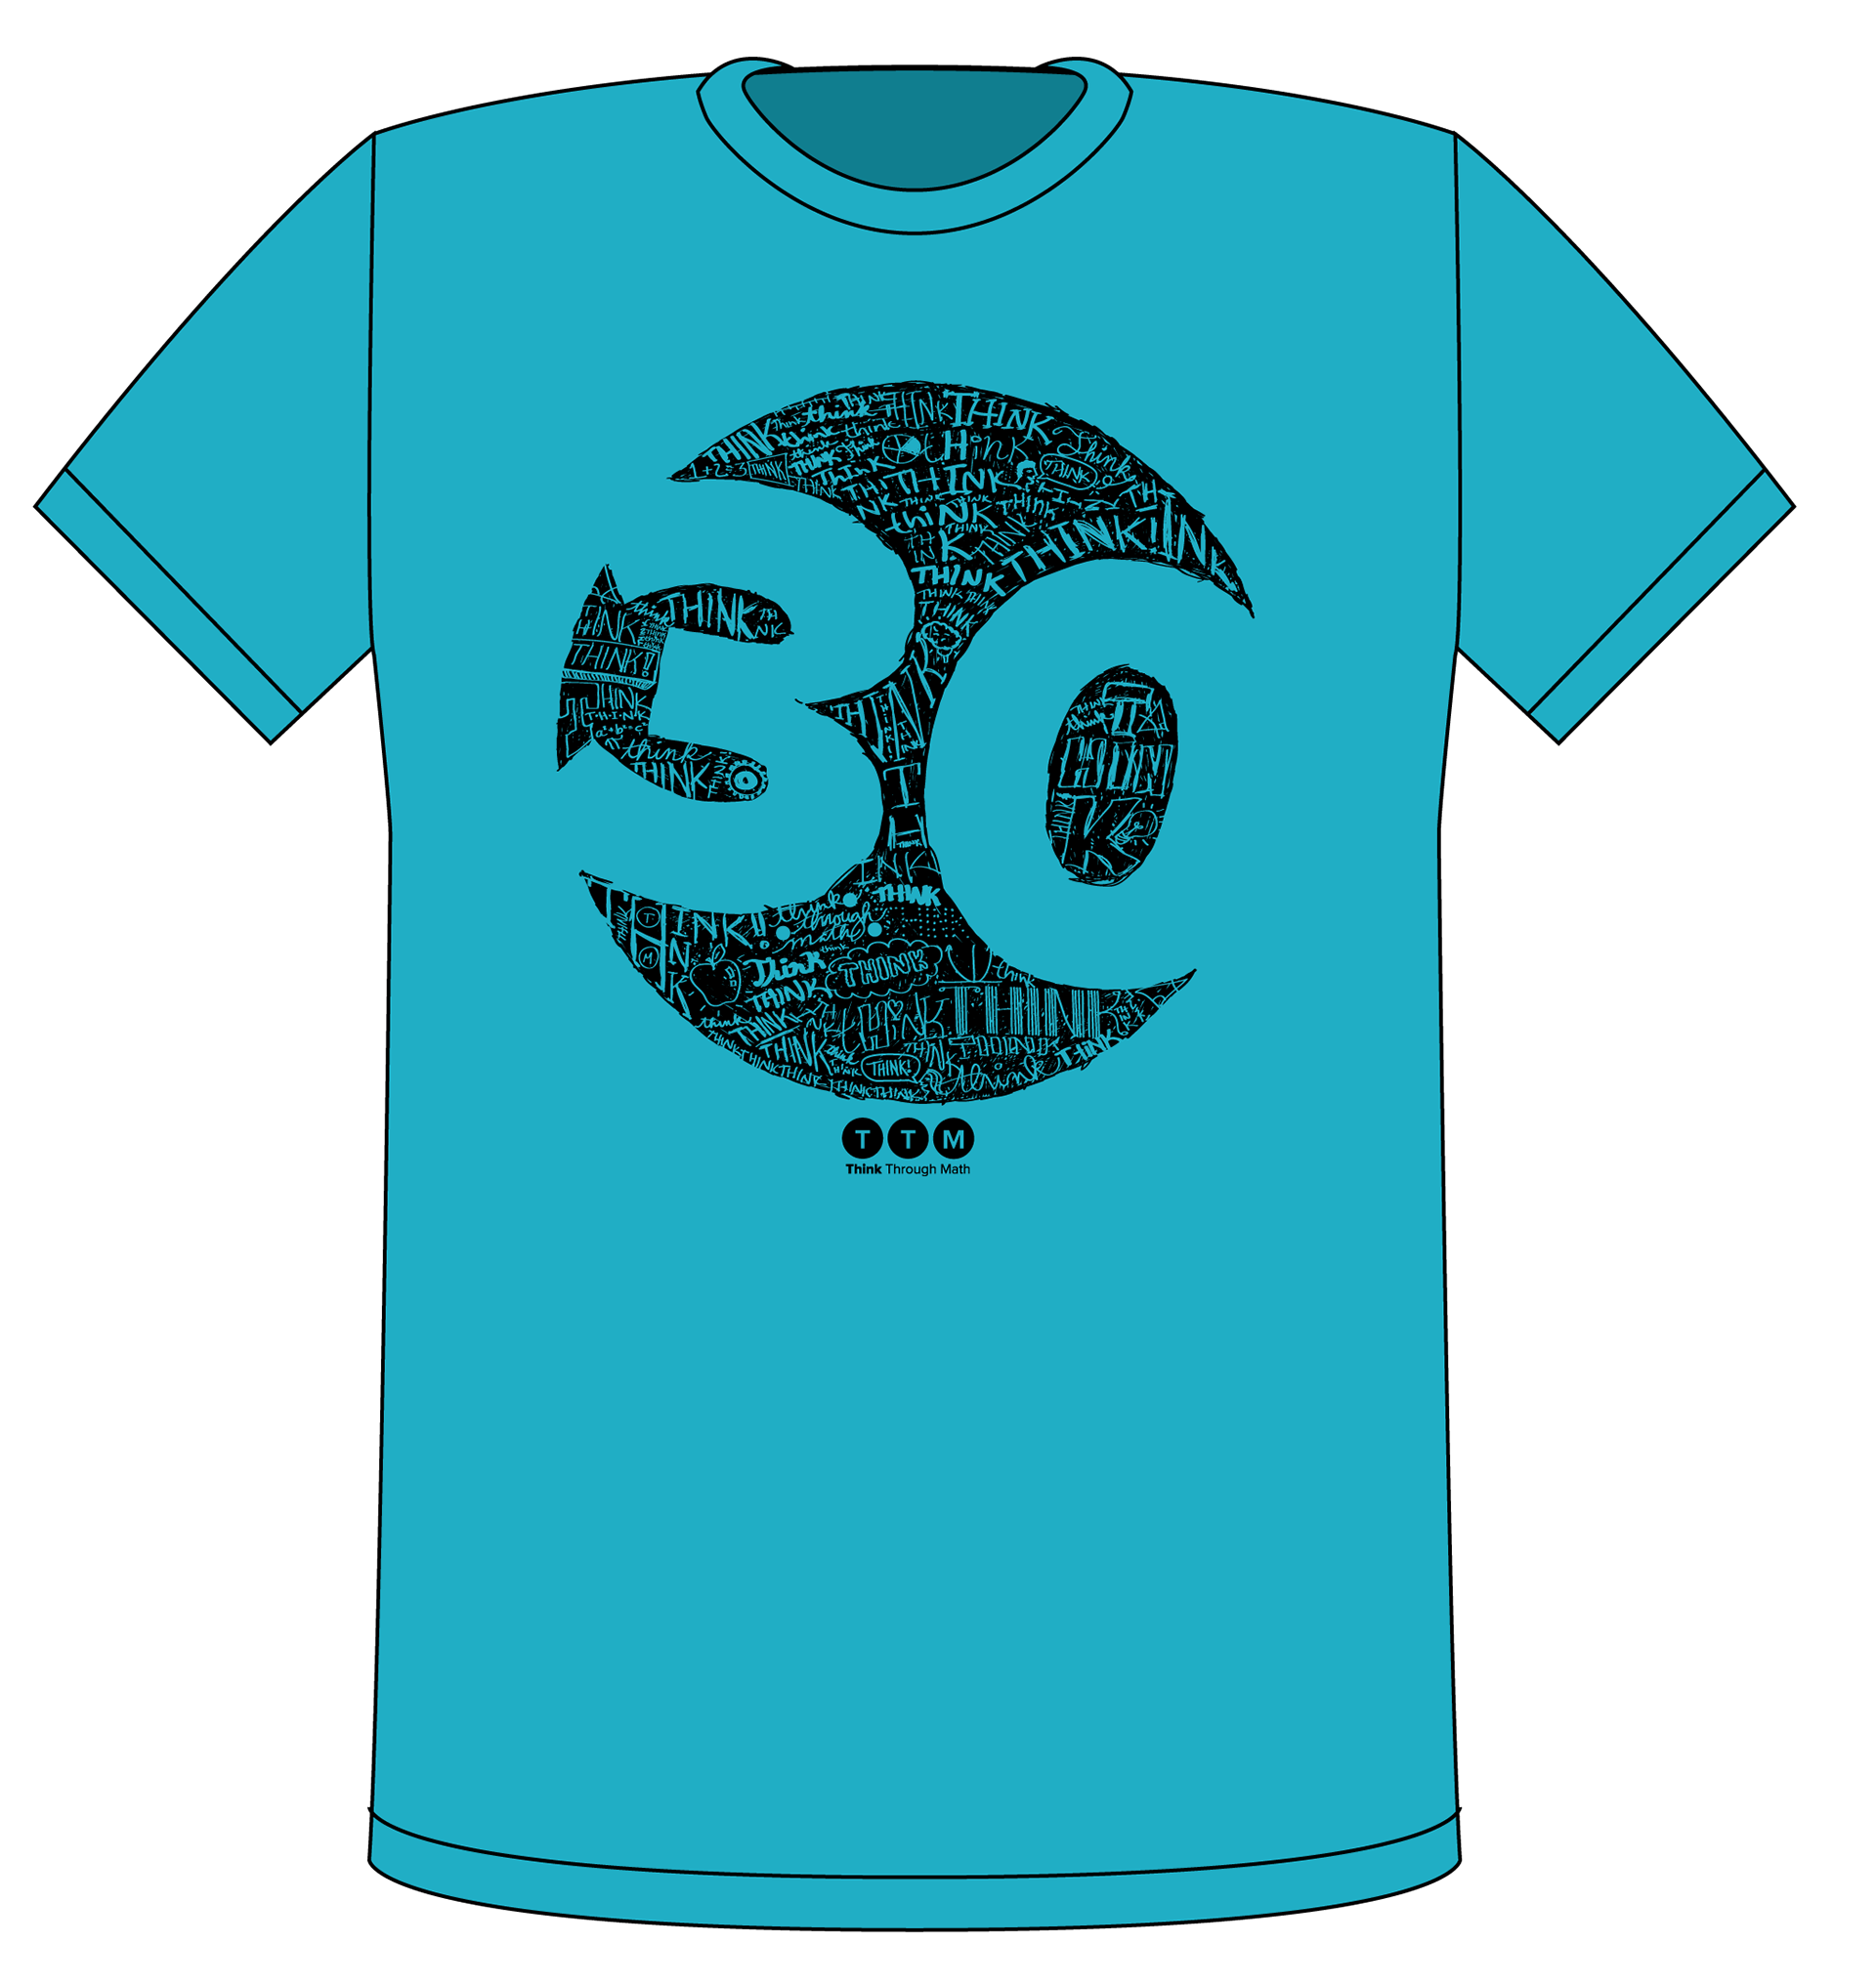 Think sale. Синяя футболка с логотипом. Принты для футболок PNG. Синяя футболка макет. Blue Tshirt Design.